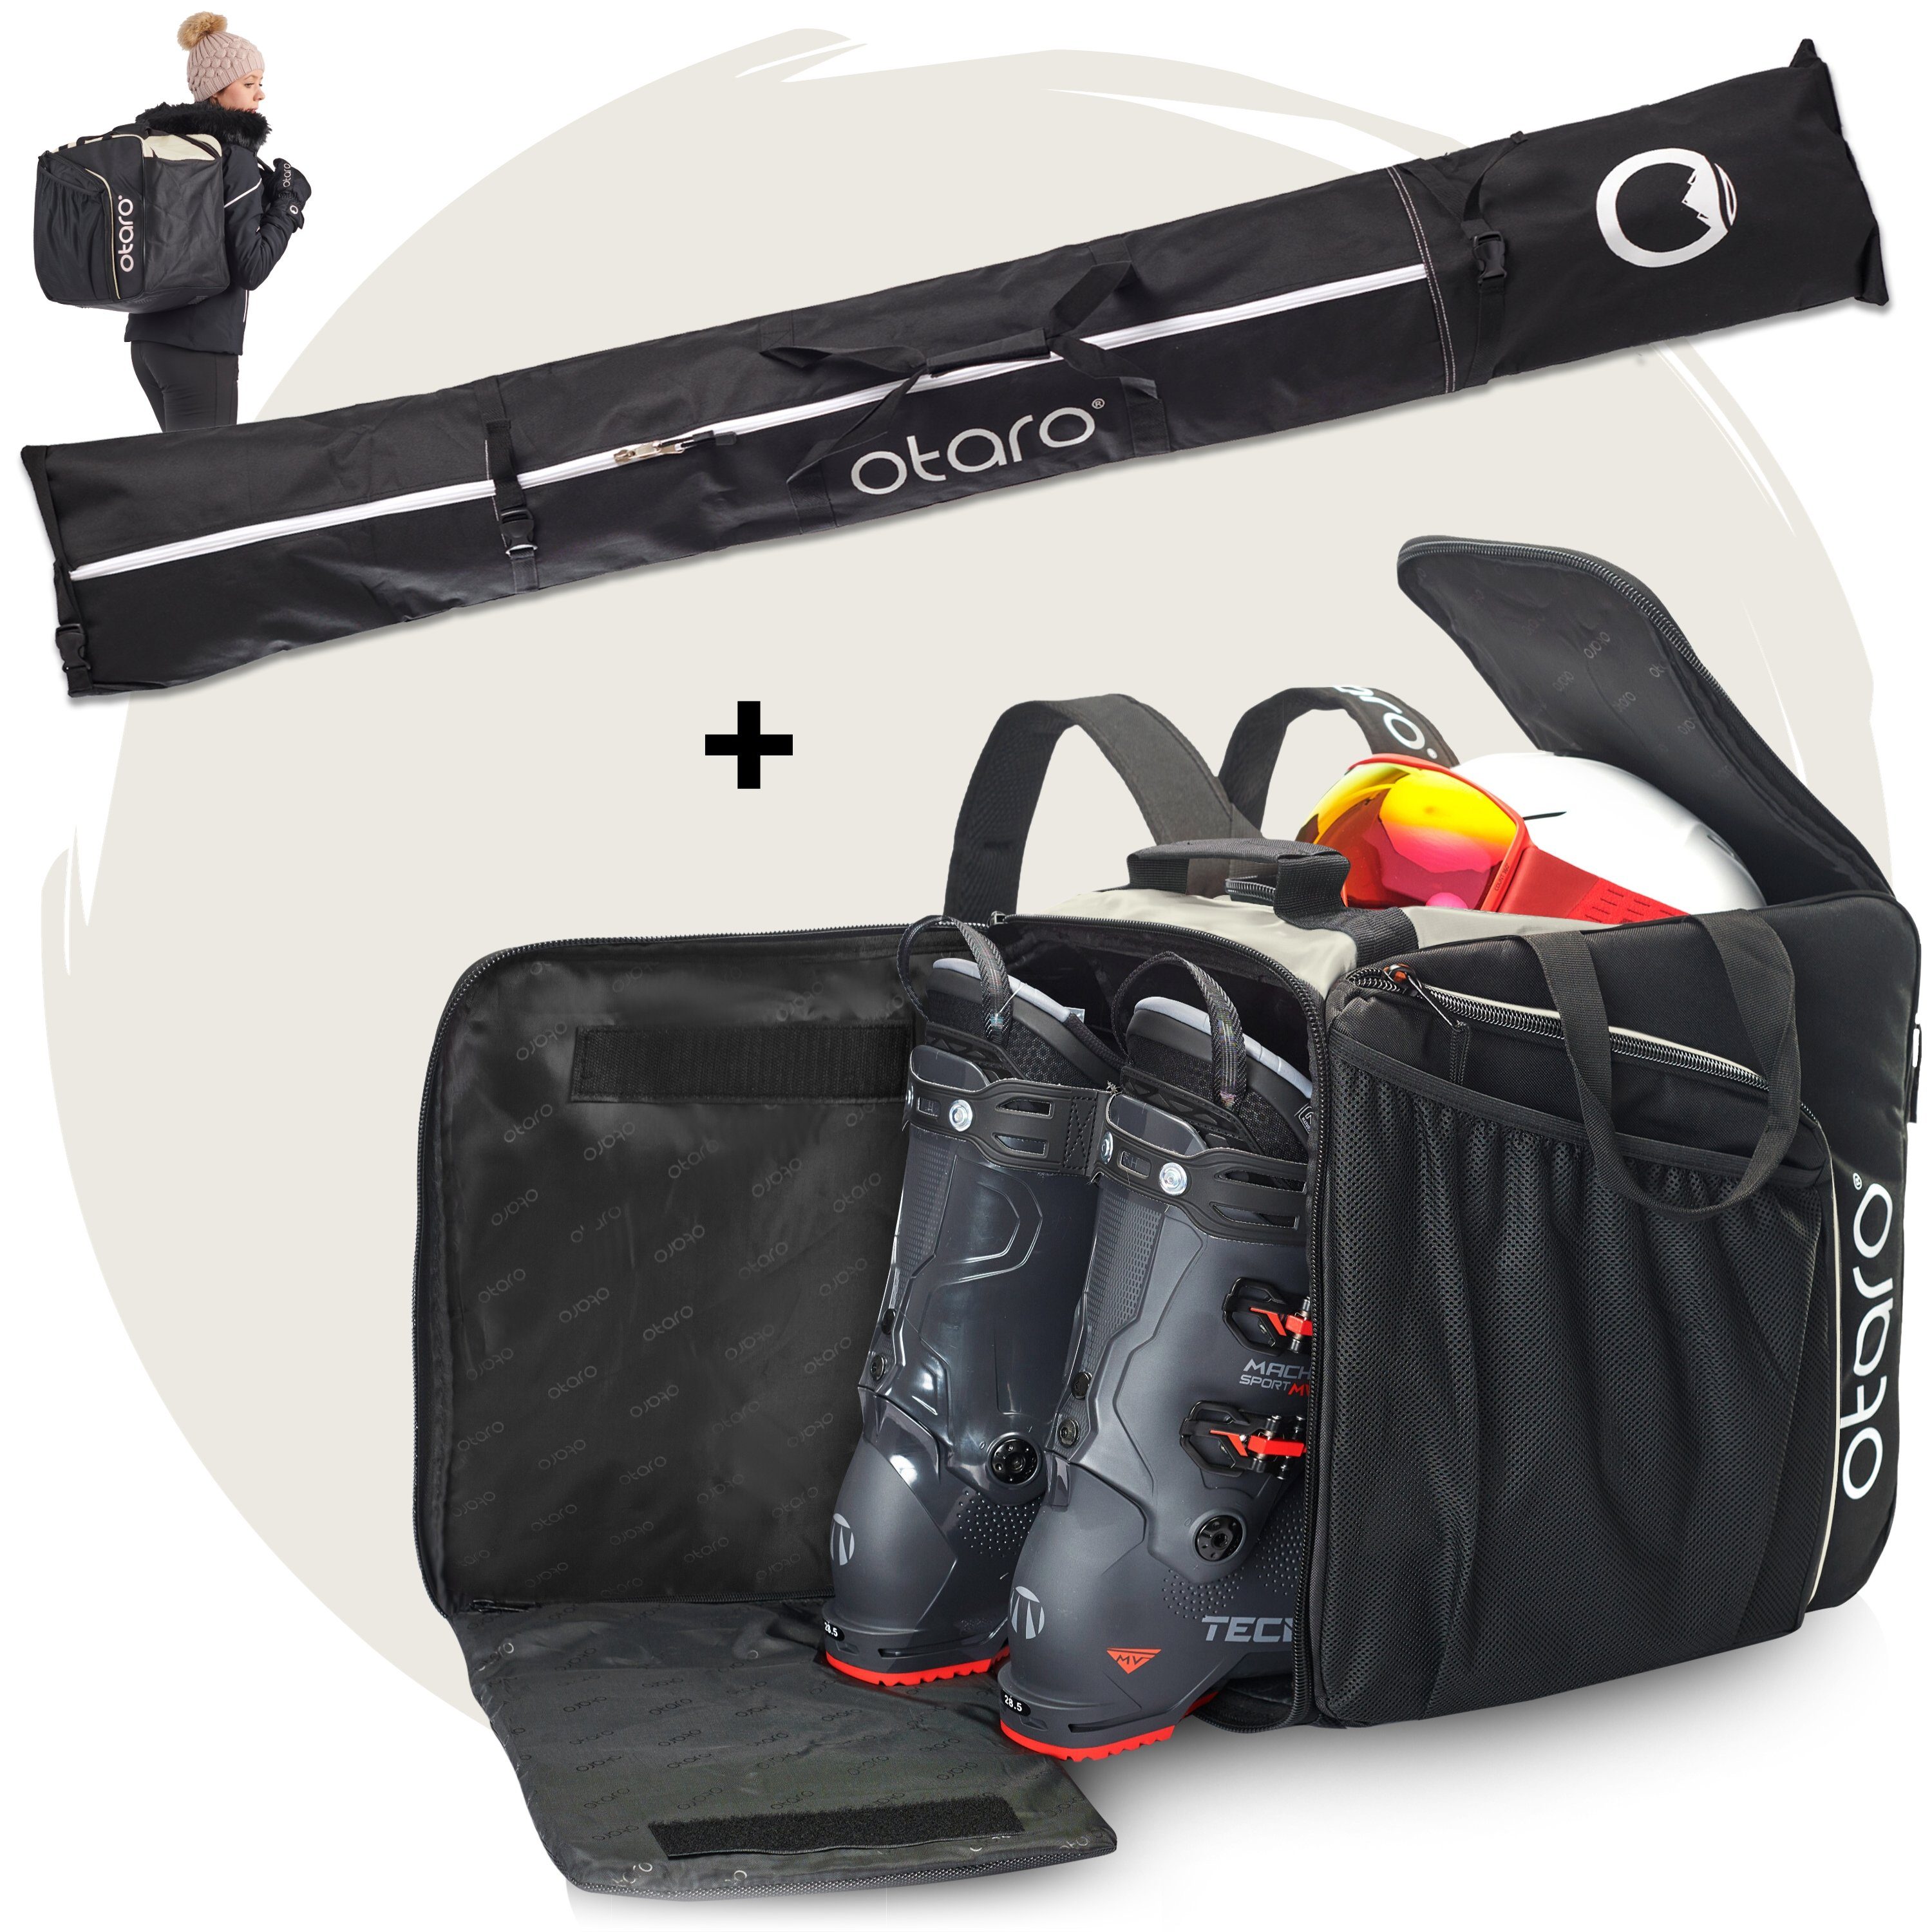 + 1 Ski für Stöcke) Frostweiß 1 für Set: Sporttasche & Pro-Set für Skischuhtasche Paar deine Perfekt Paar (Schutz Ausrüstung, durchdacht, Otaro ausklappbare Ski Schwarz Skitasche, Standfläche,